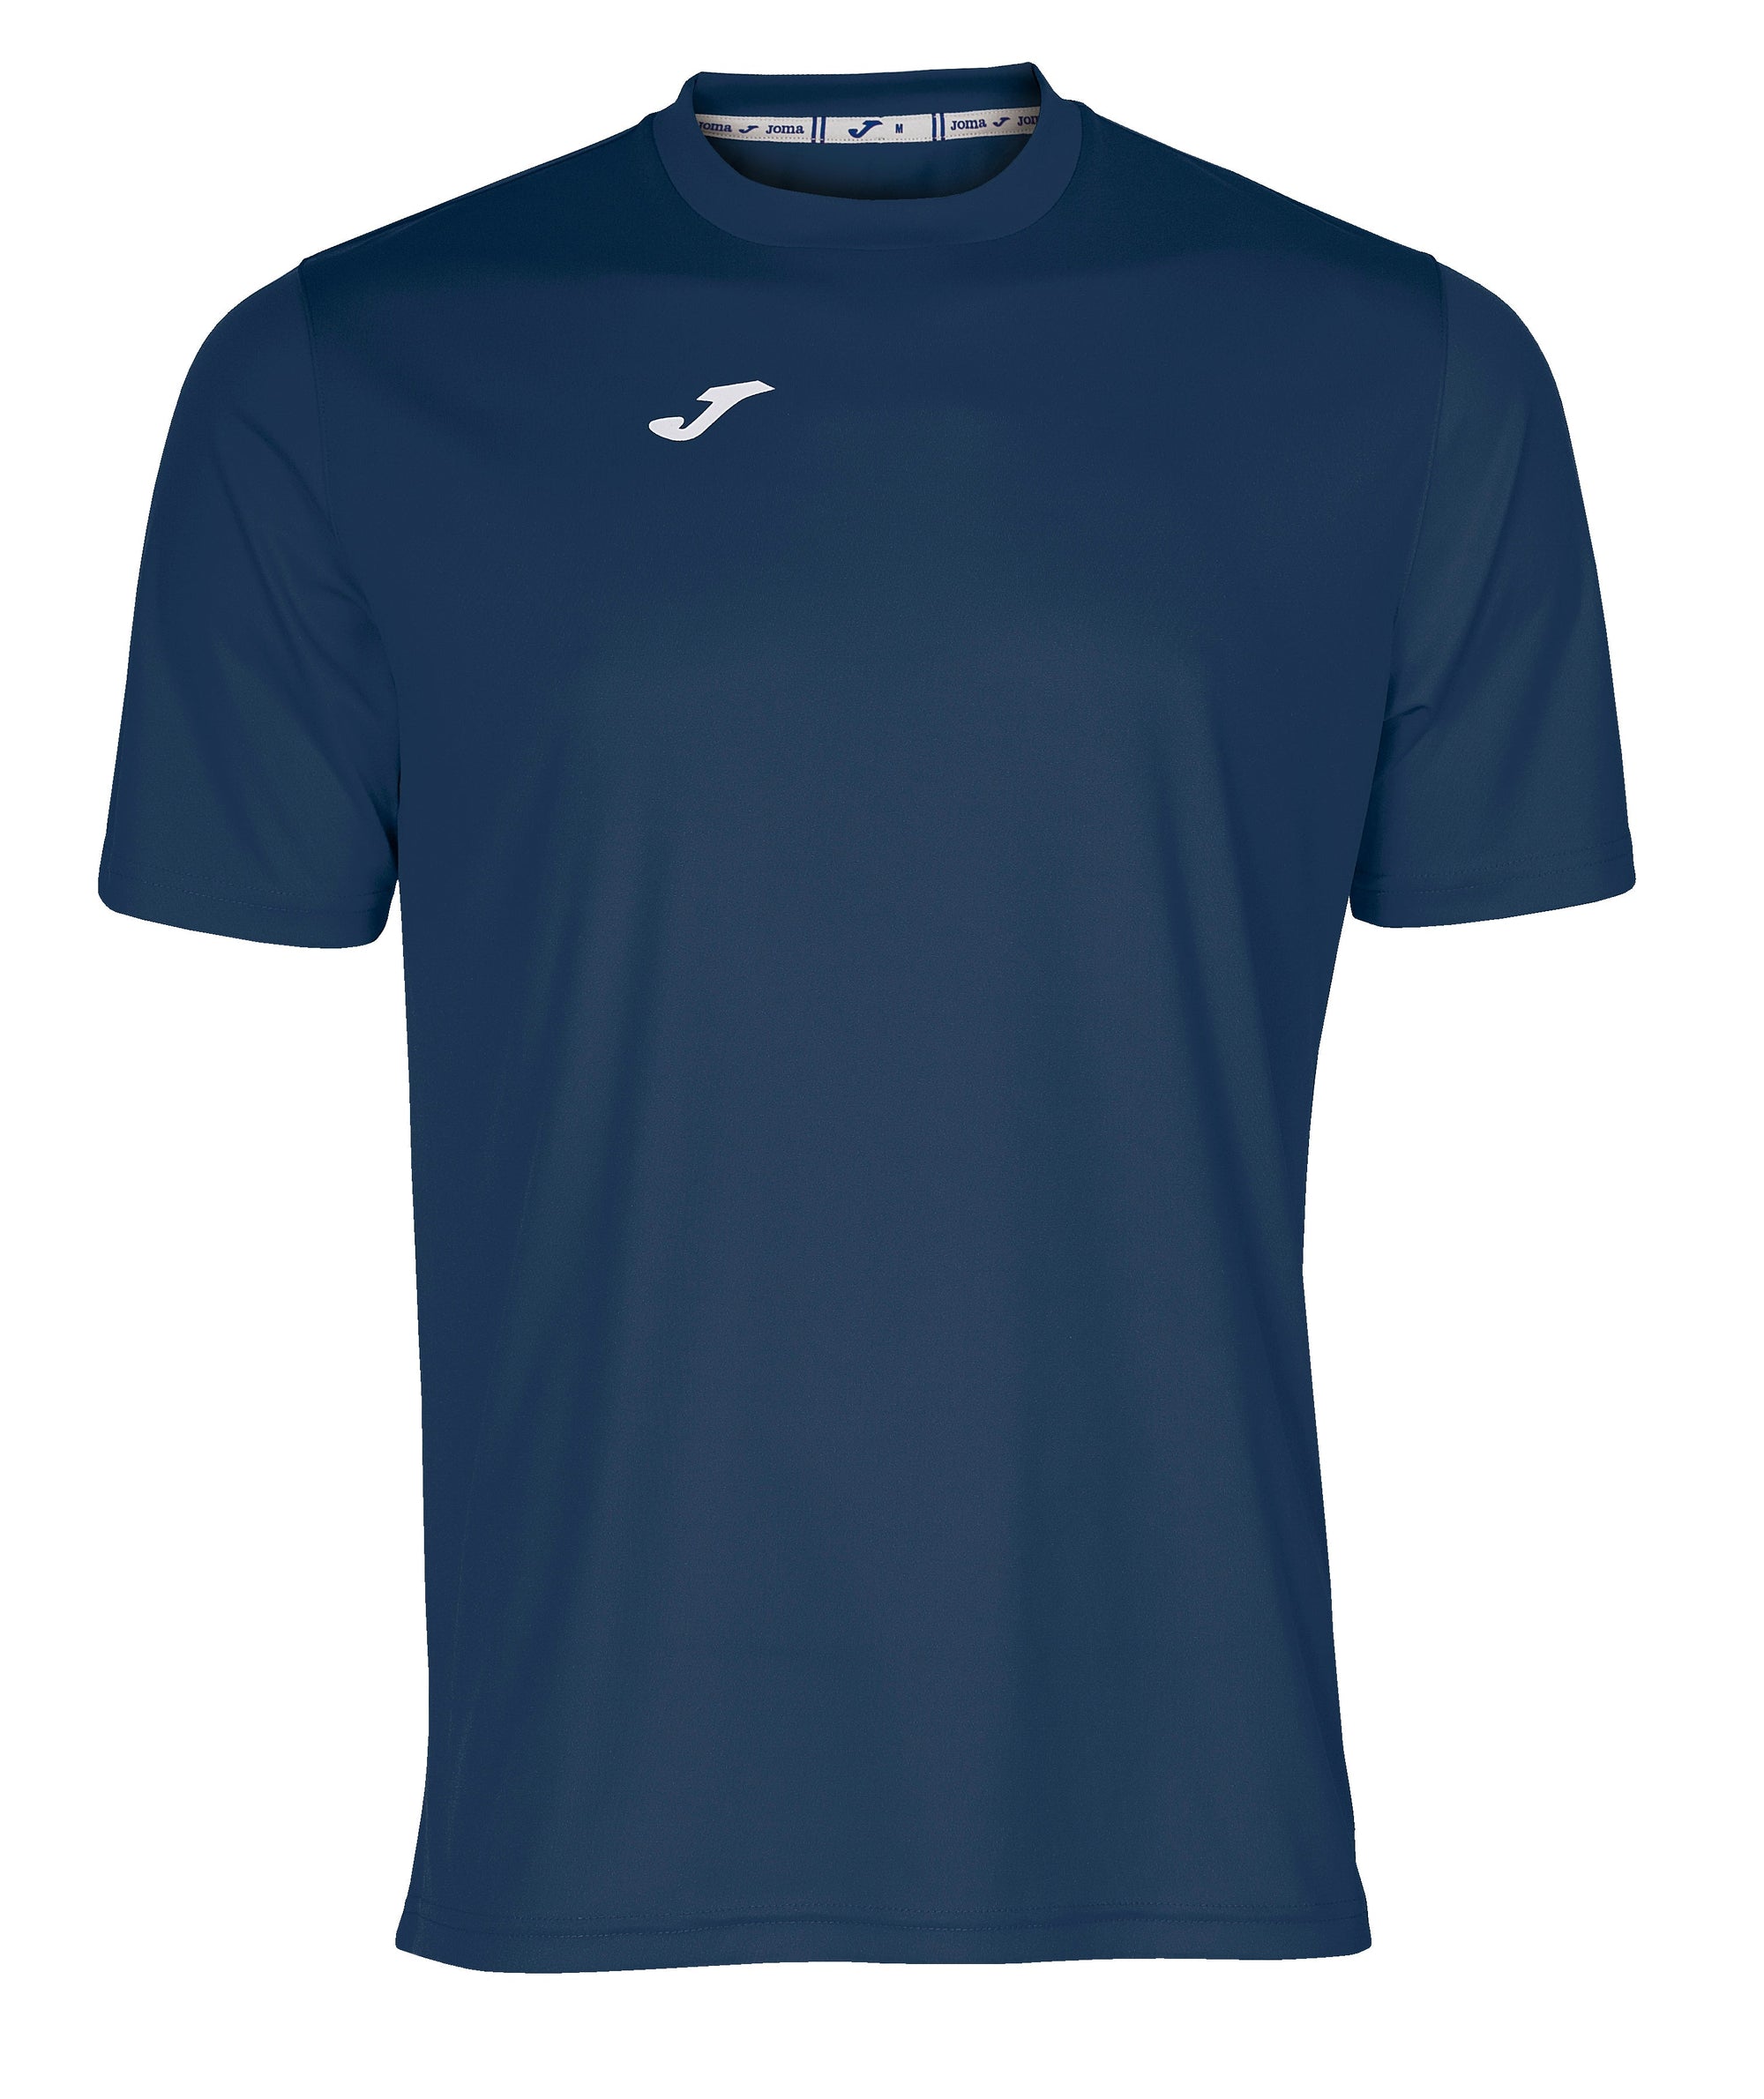 Joma Combi Short Sleeved T-Shirt - Dark Navy